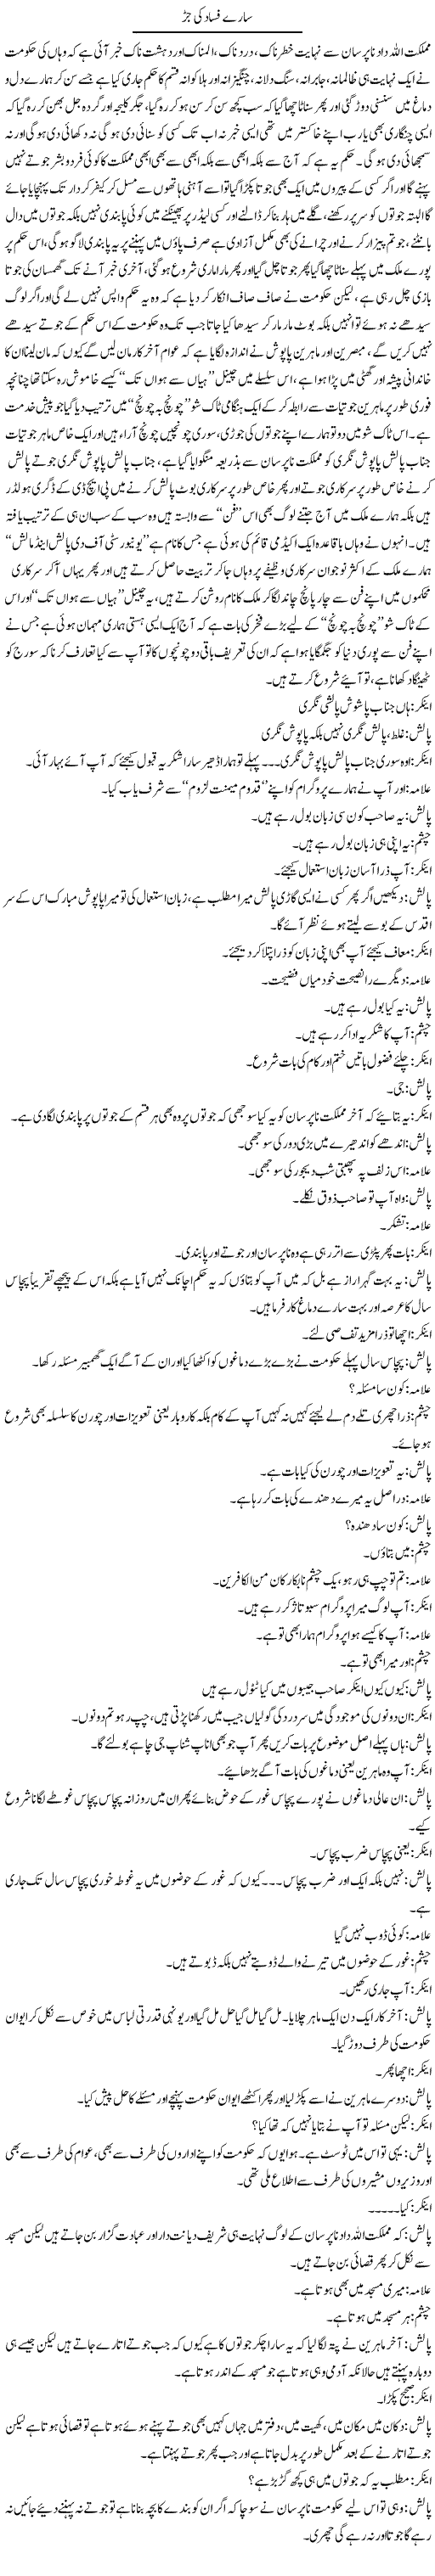 Pakistan khud se kab milay ga? | Saad Ullah Jan Barq | Daily Urdu Columns